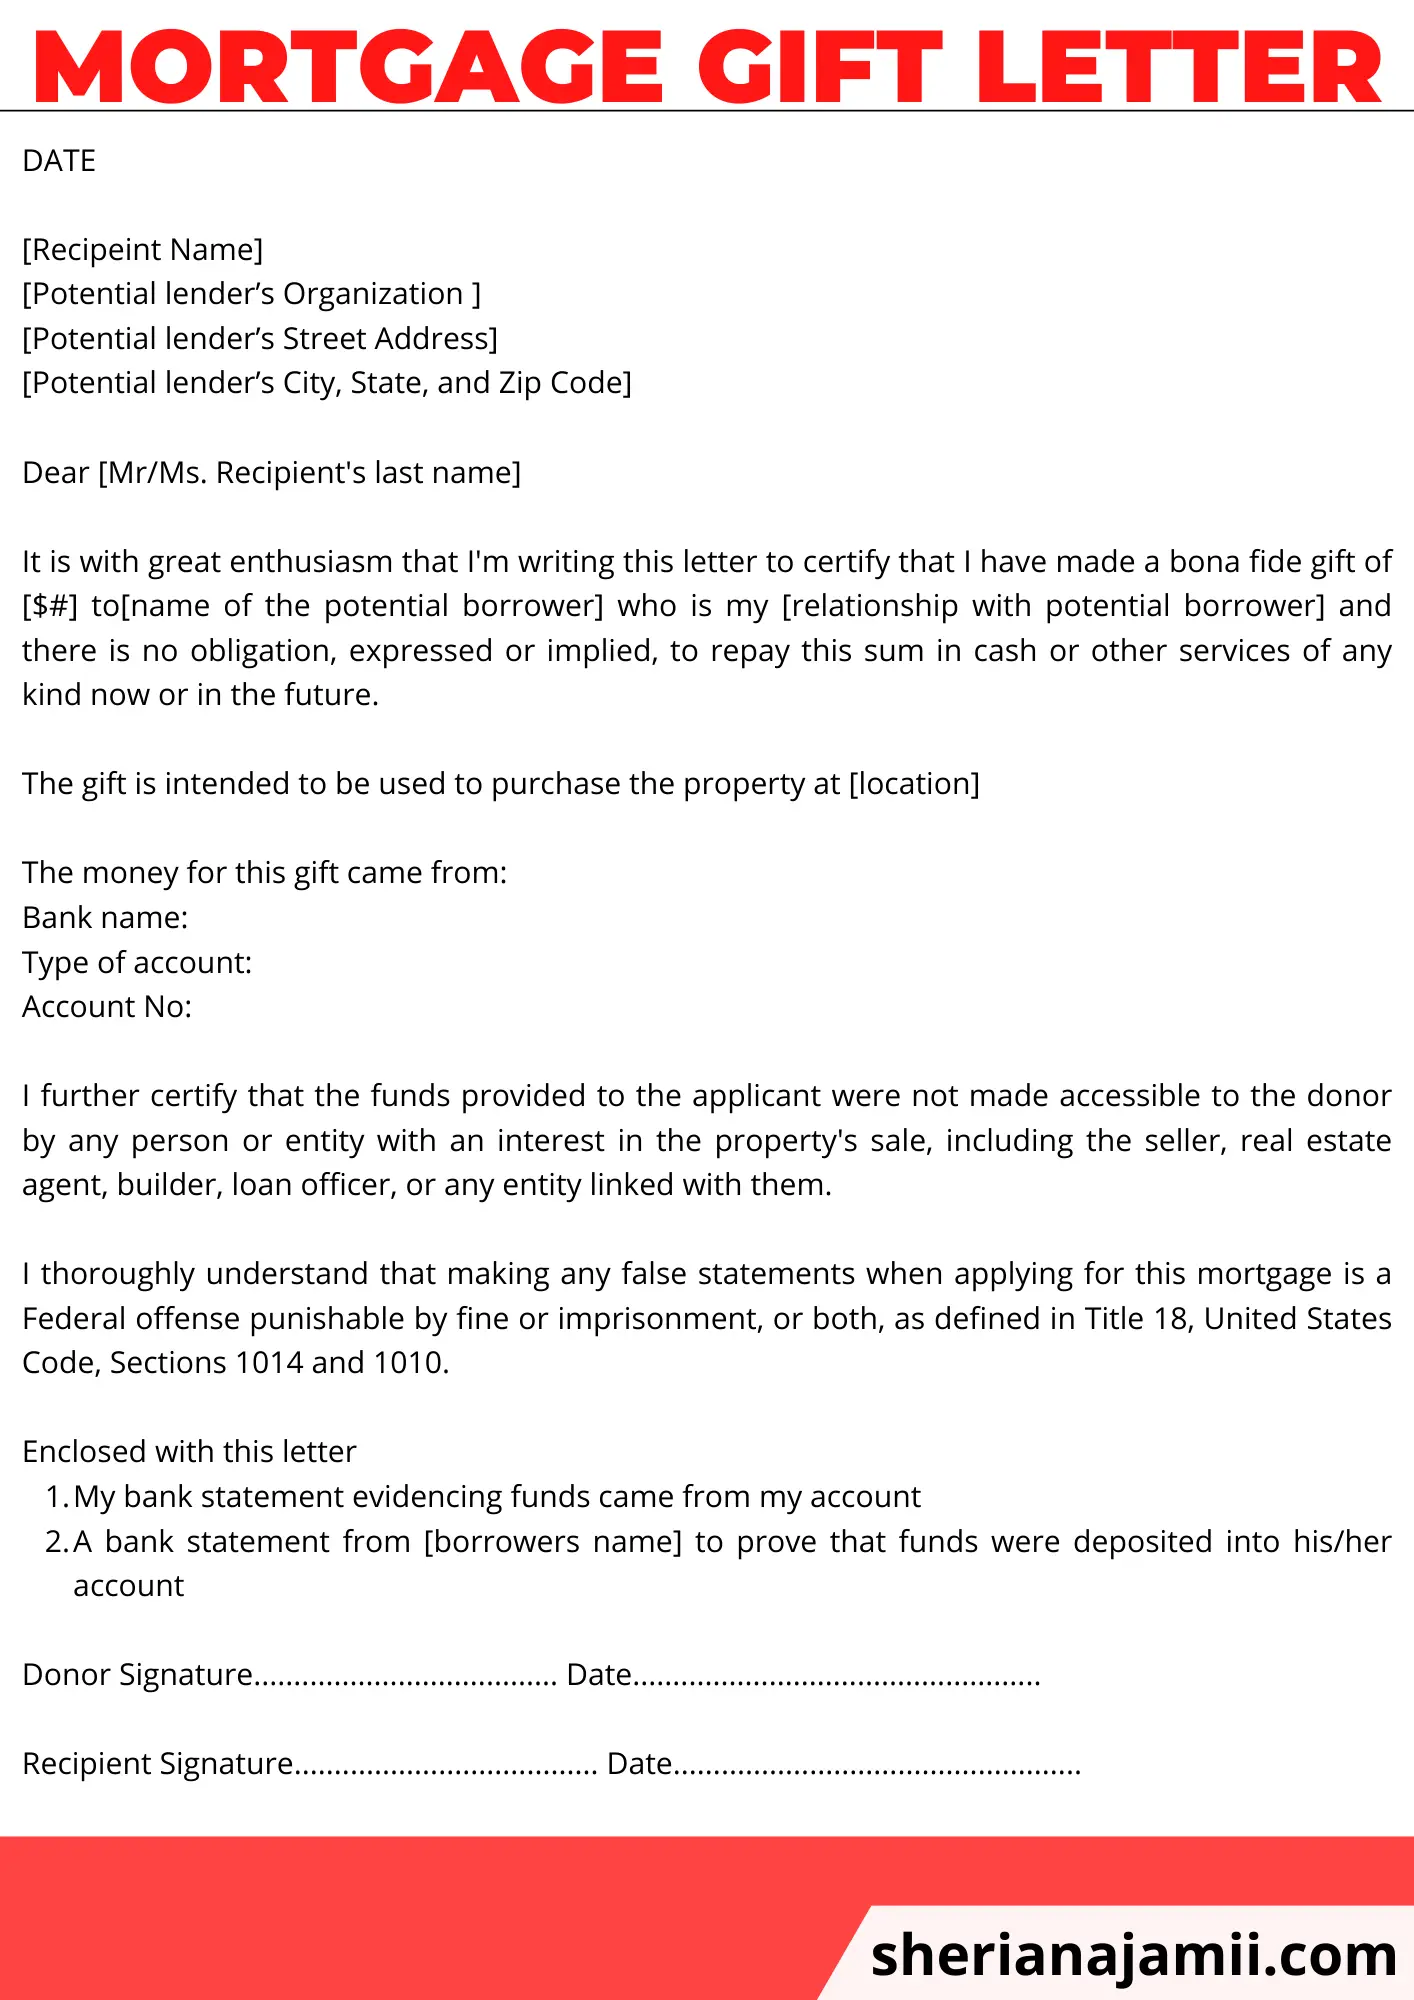 Mortgage gift letter, Mortgage gift letter template, Mortgage gift letter sample, Mortgage gift letter example